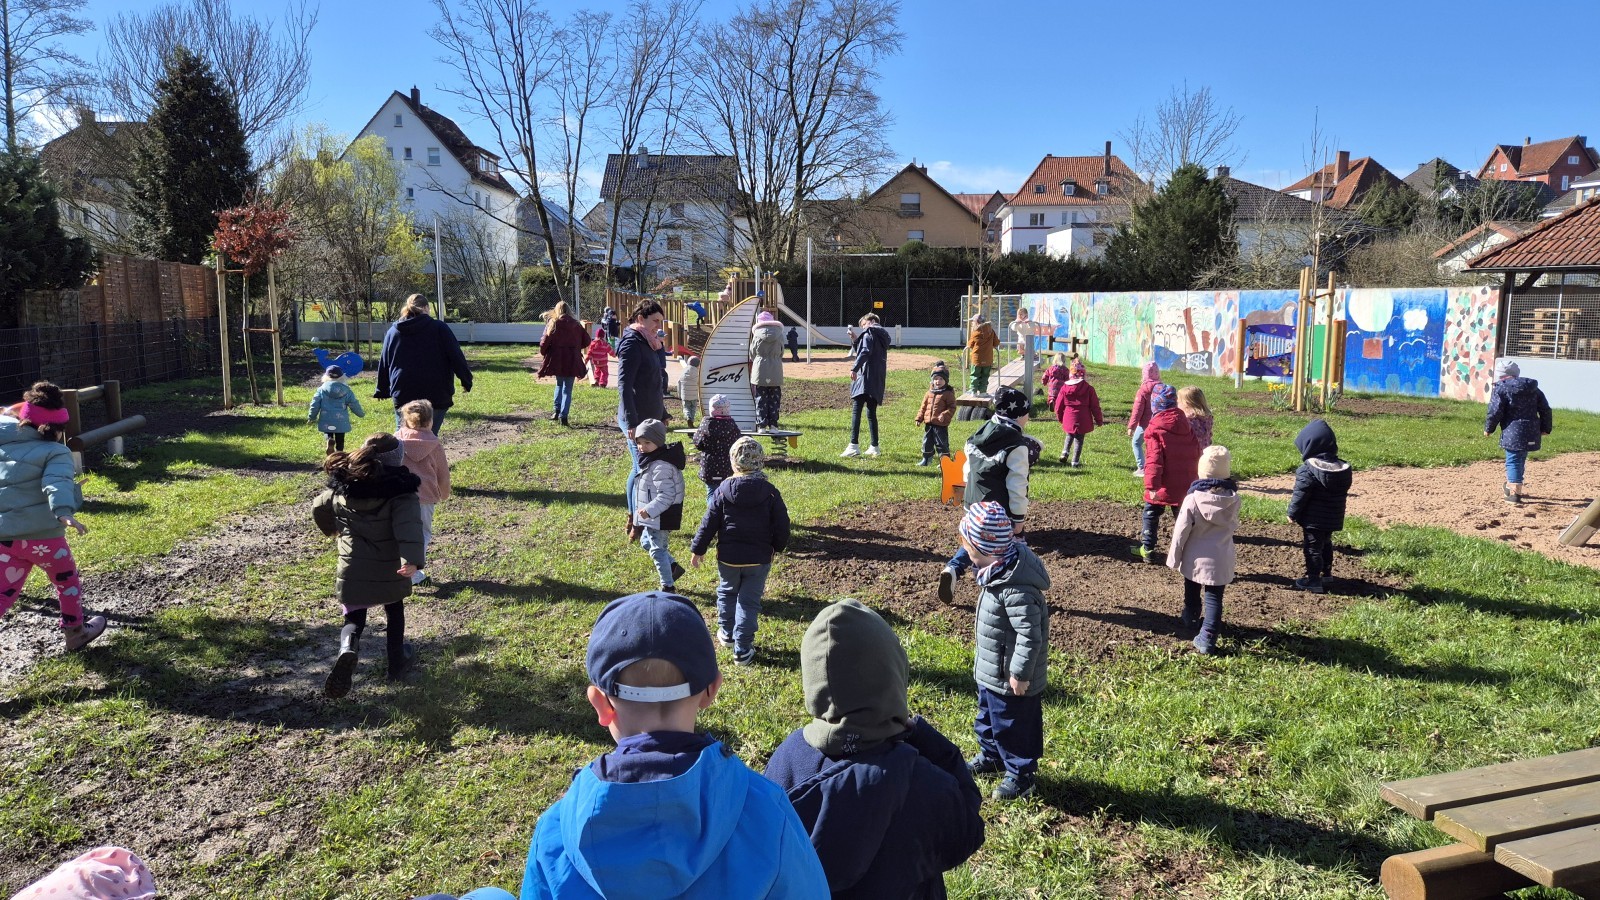 Neuer Spielplatz in der Neuen Straße in Stadtoldendorf feierlich eingeweiht